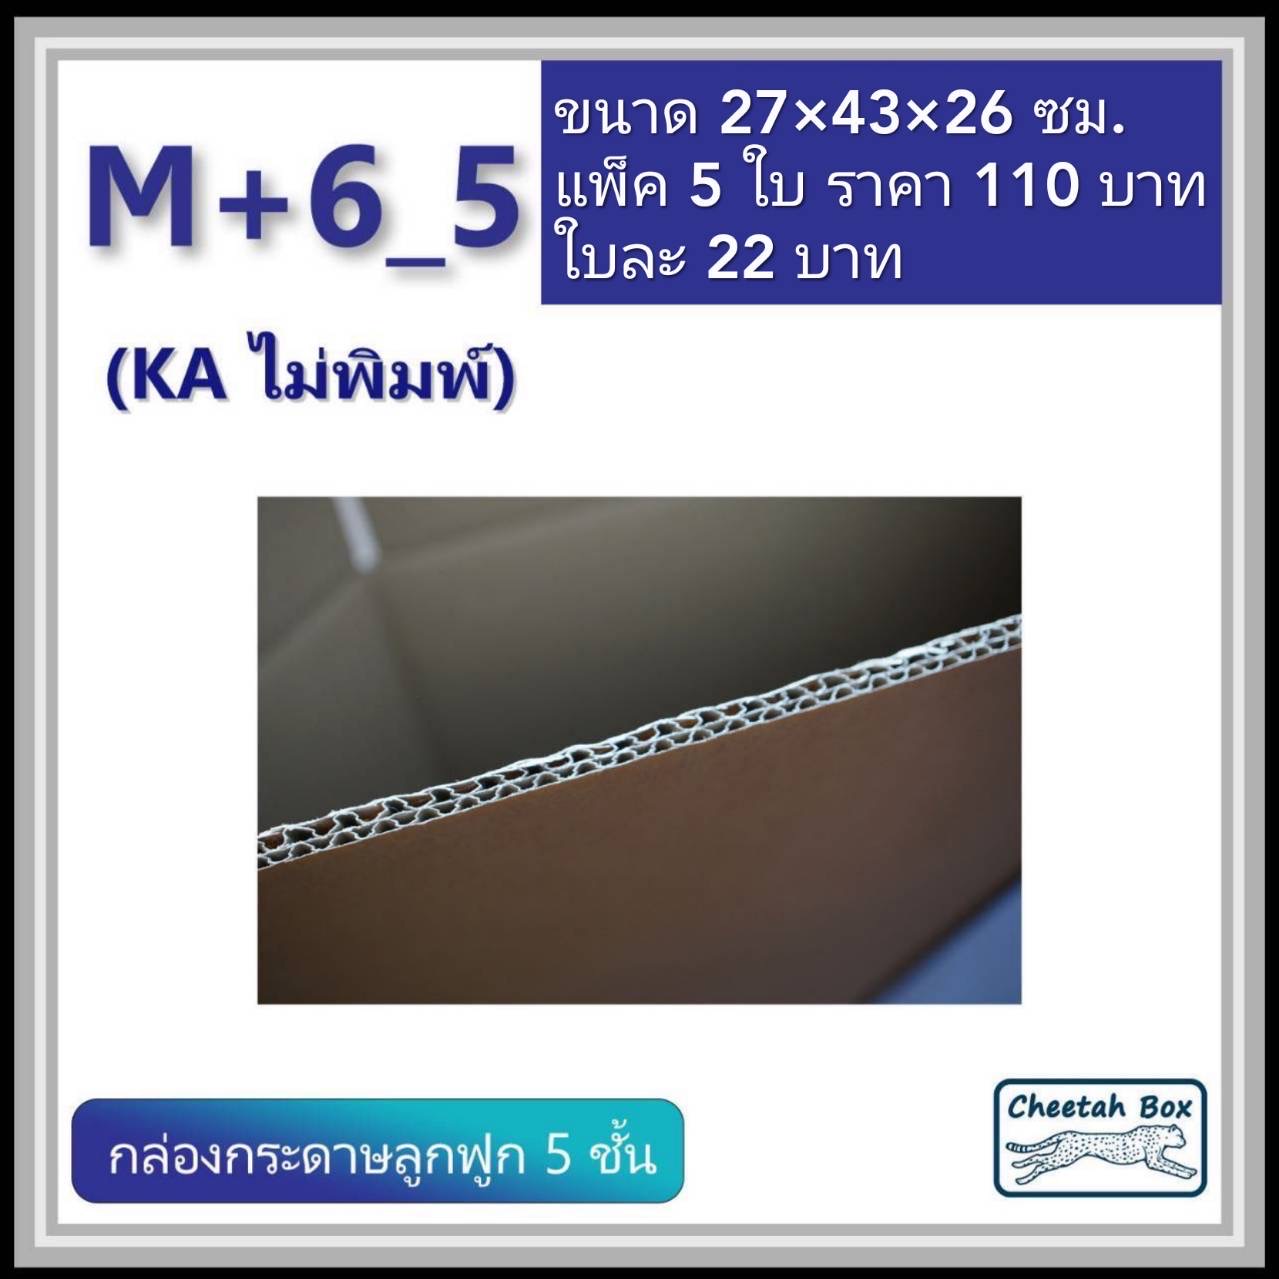 กล่องพัสดุขนาด M เพิ่มความสูง 6 cm รหัส M+6_5  กระดาษ KA 5 ชั้น ไม่พิมพ์ (Post Box) 27W x 43L x 26H cm.